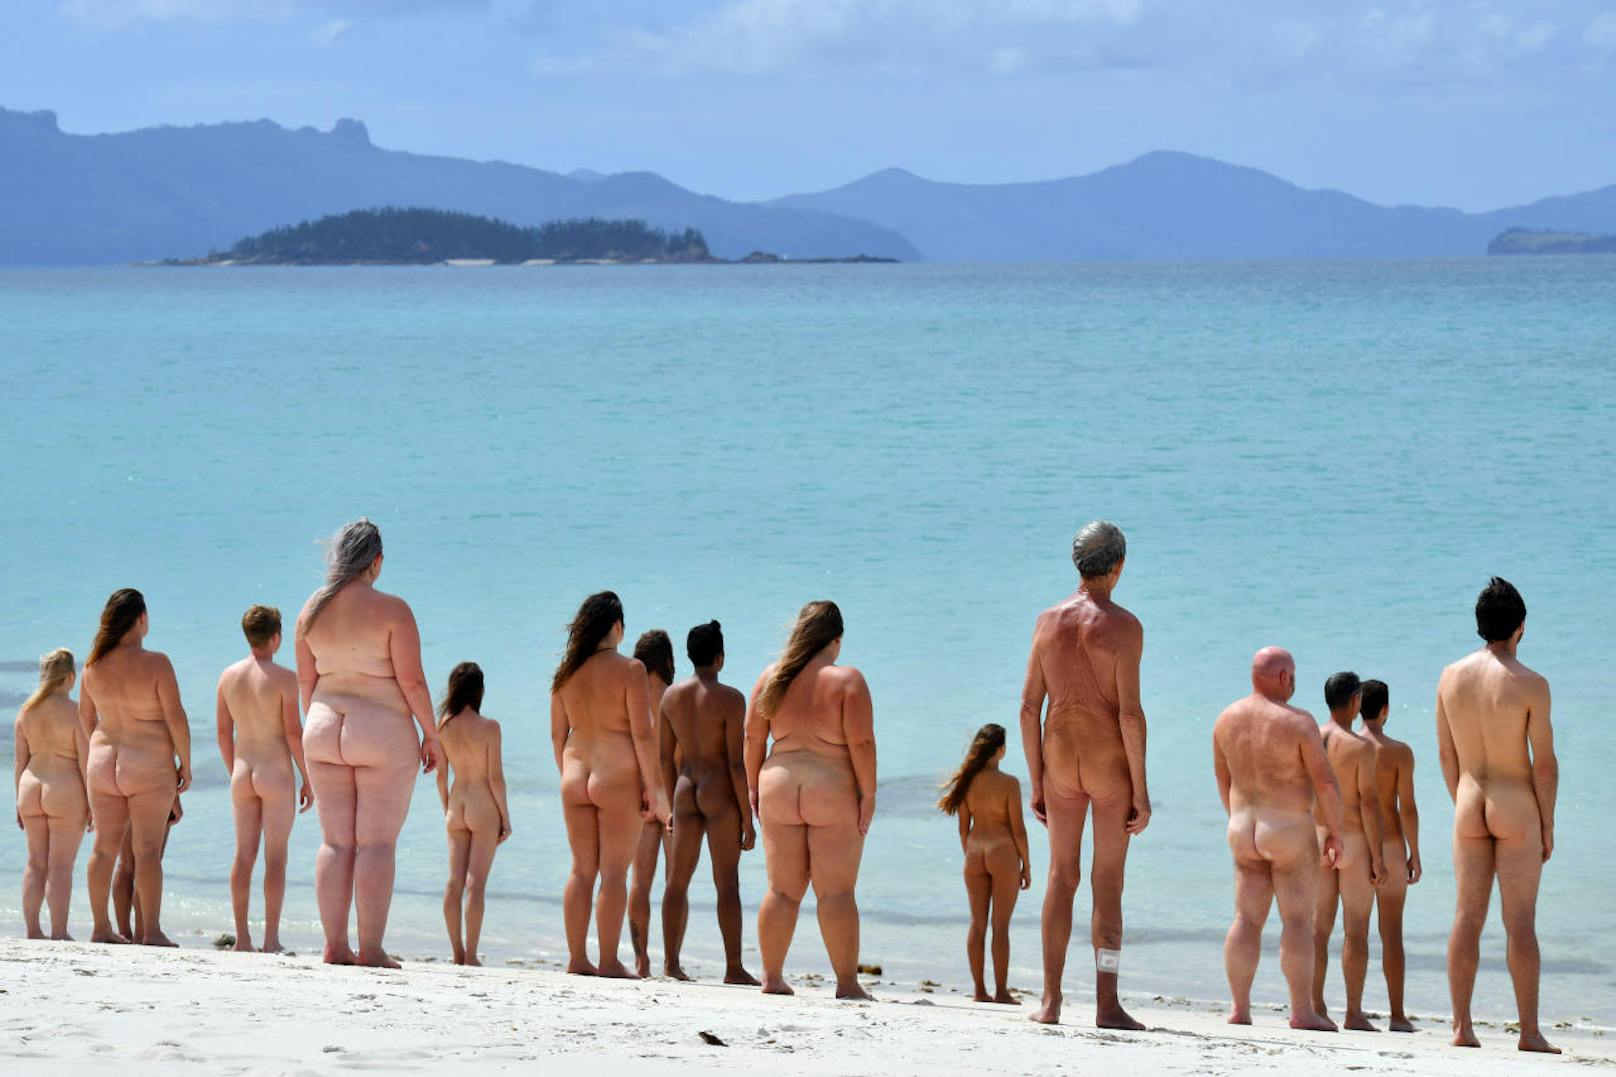 An den Bikinistreifen sieht man, dass FKK in Australien nicht besonders weit verbreitet ist.